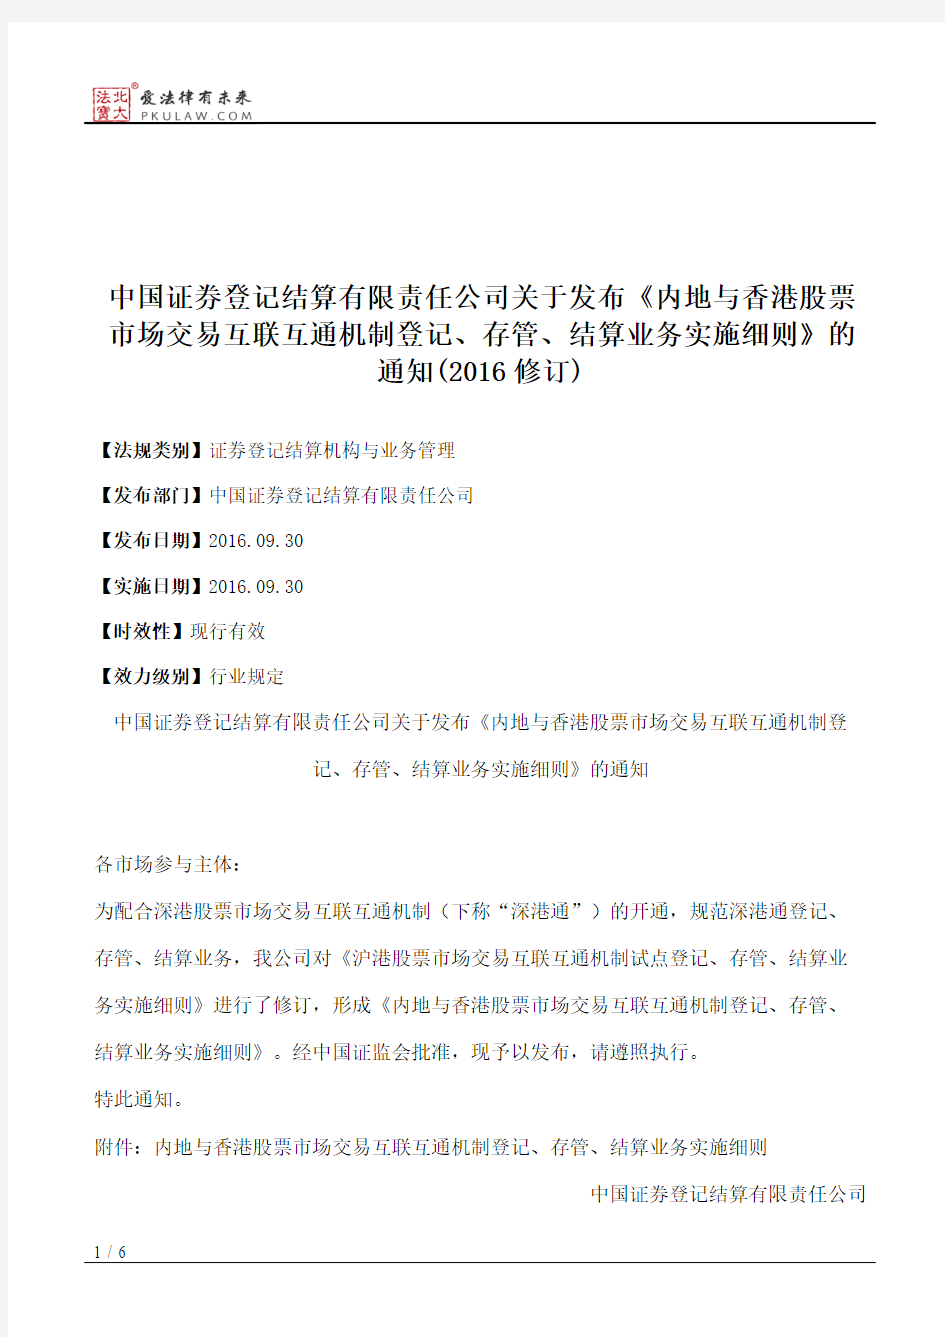 中国证券登记结算有限责任公司关于发布《内地与香港股票市场交易